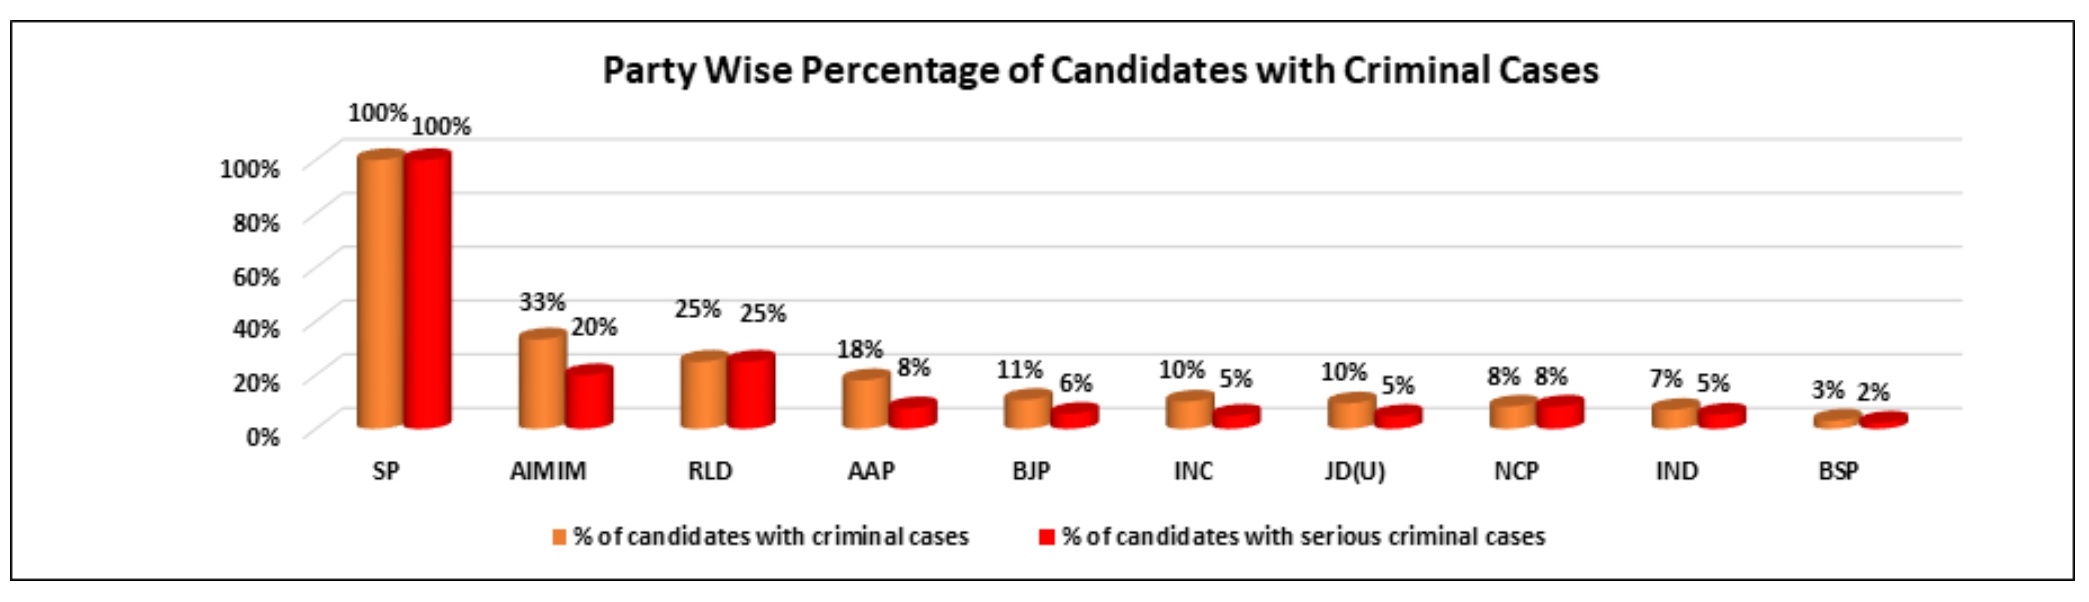 विभिन्न पार्टियों के उम्मीदवारों द्वारा घोषित दर्ज आपराधिक मामलों के आंकड़े